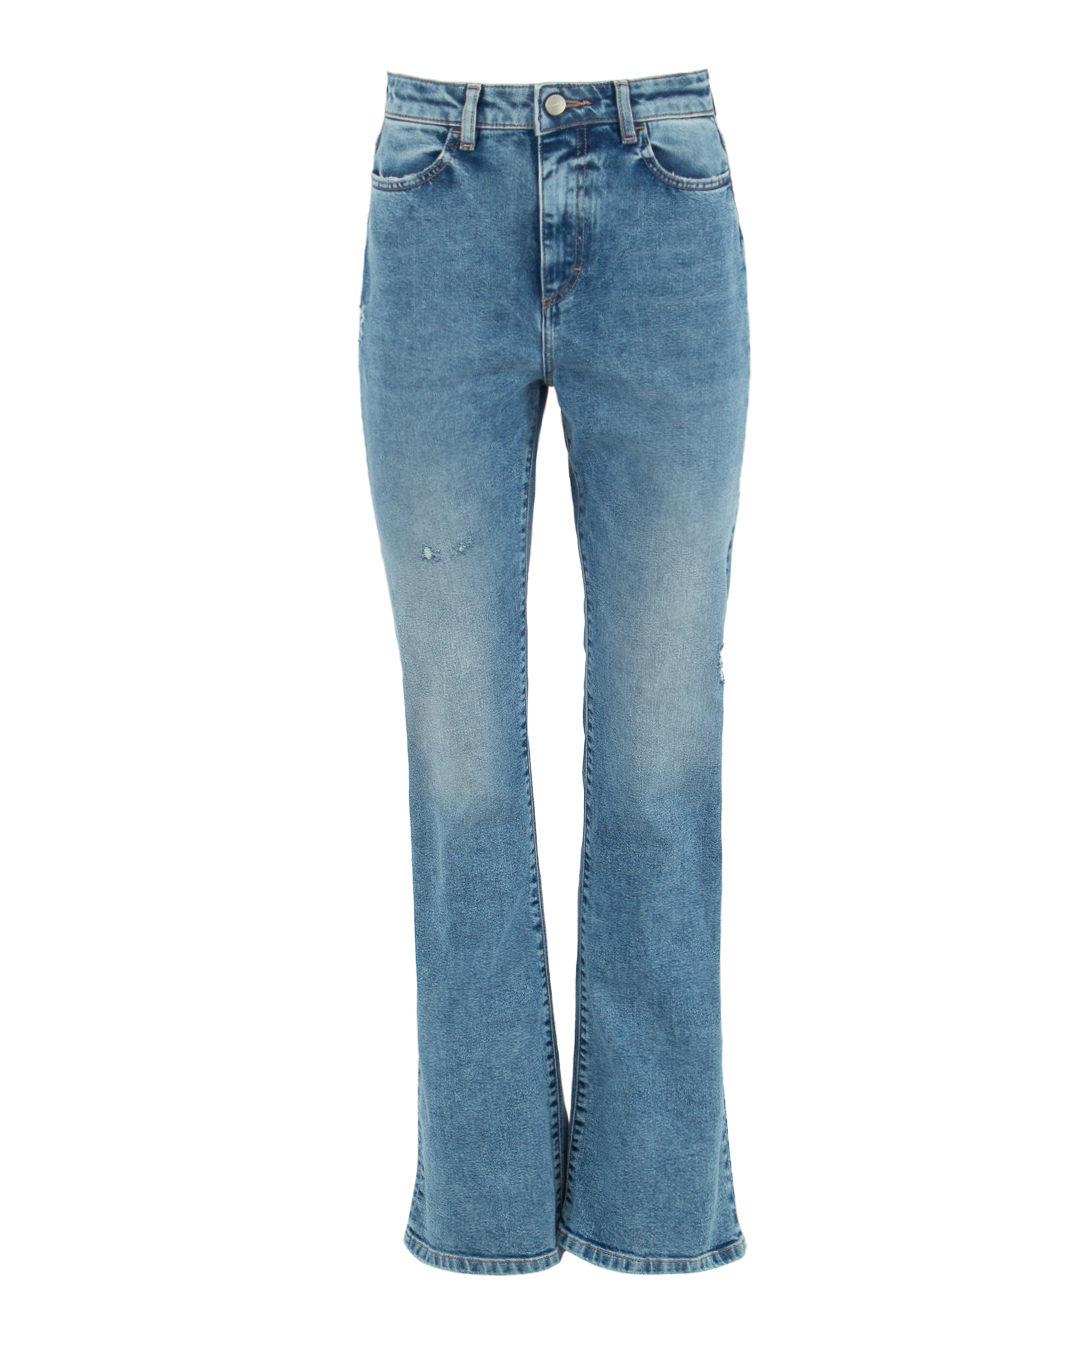 джинсы ICON DENIM NATIEID726 голубой 25, размер 25 - фото 1